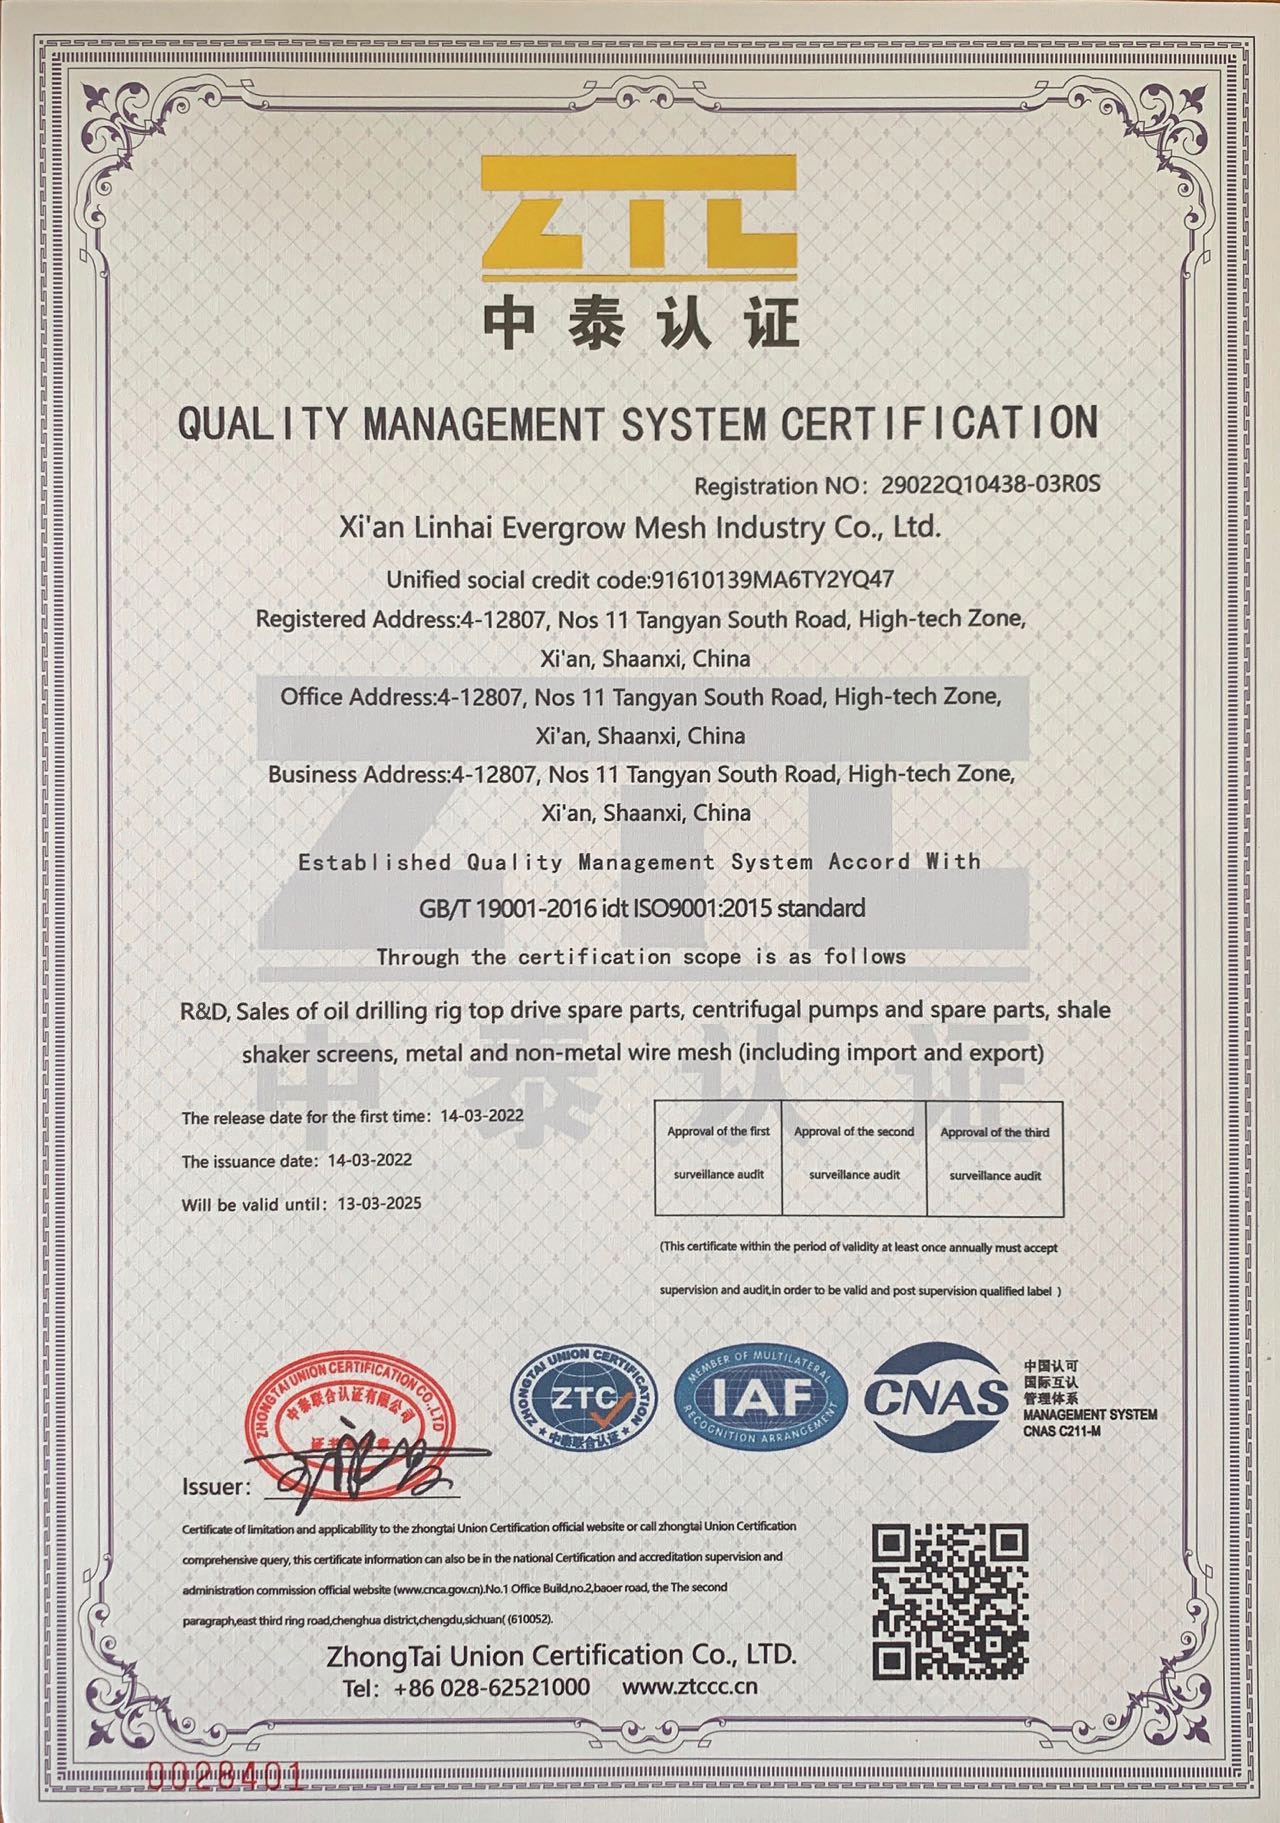 Certificado ISO 9001.